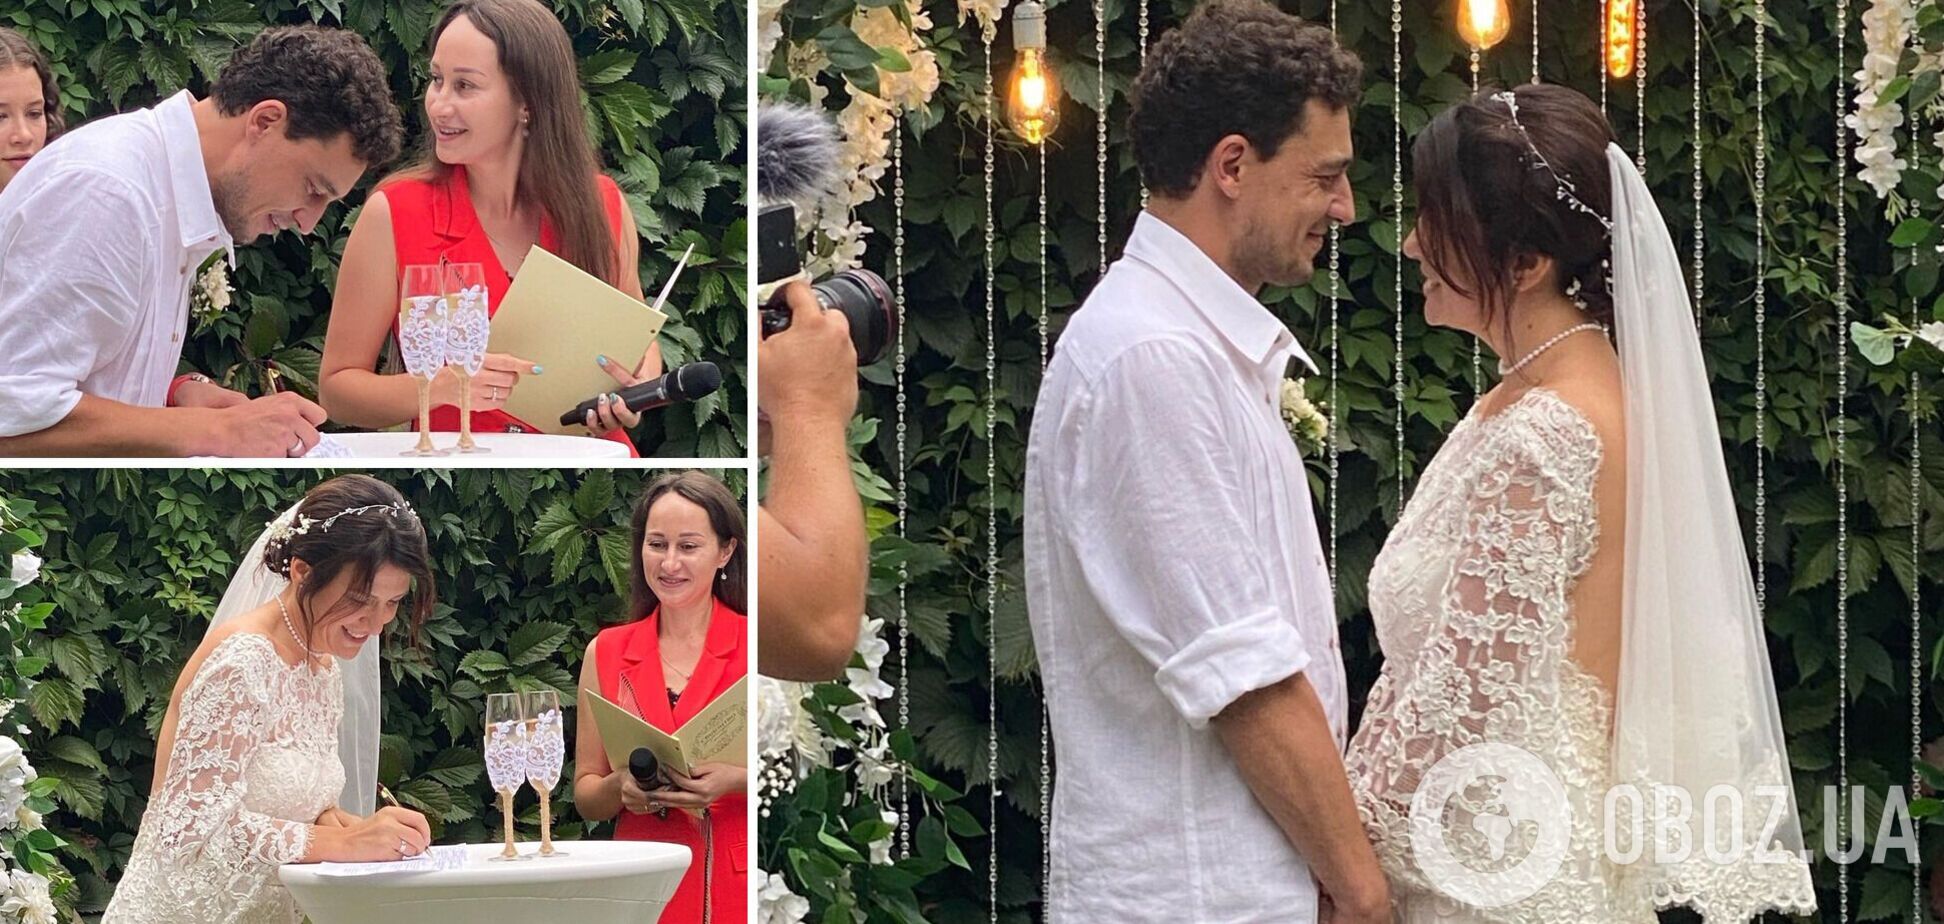 Появились новые фото со свадьбы Синельникова в Буче